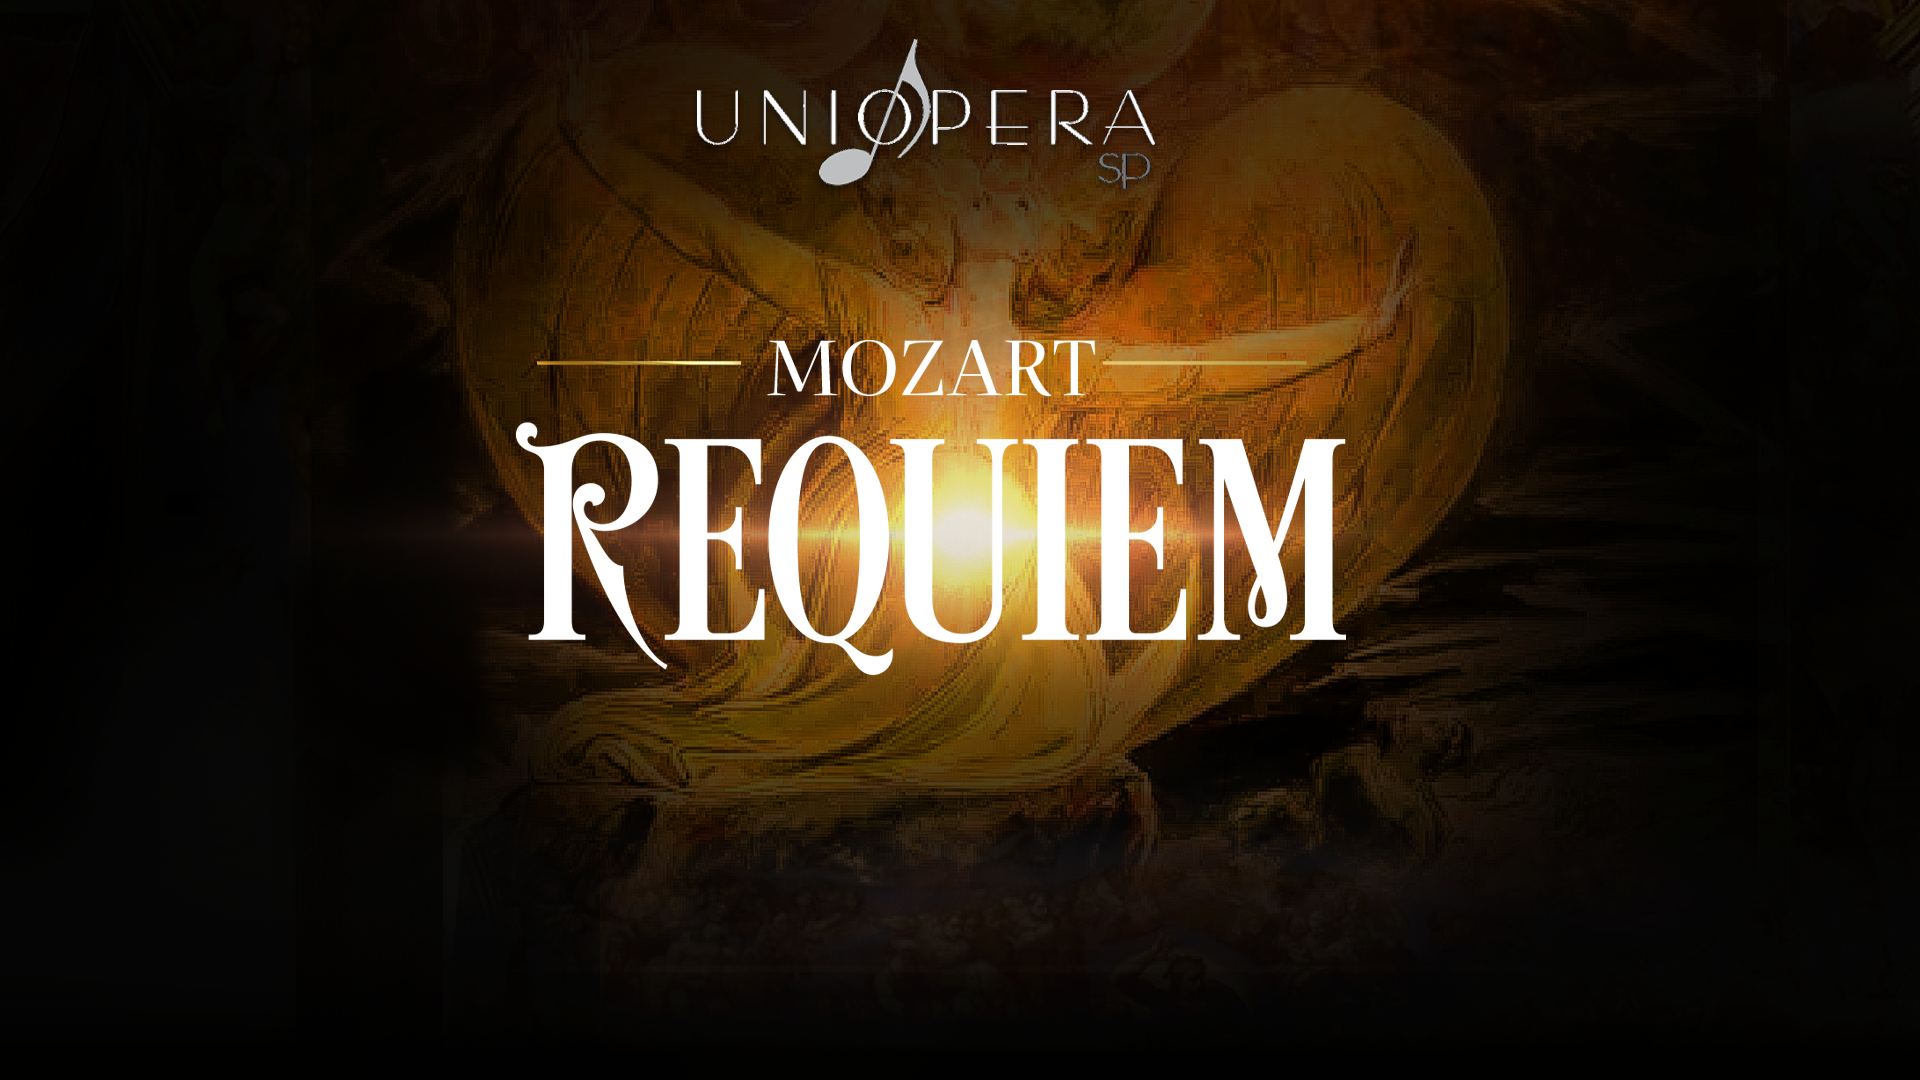 Cidade das Artes - Programação - Requiem de W.A. Mozart